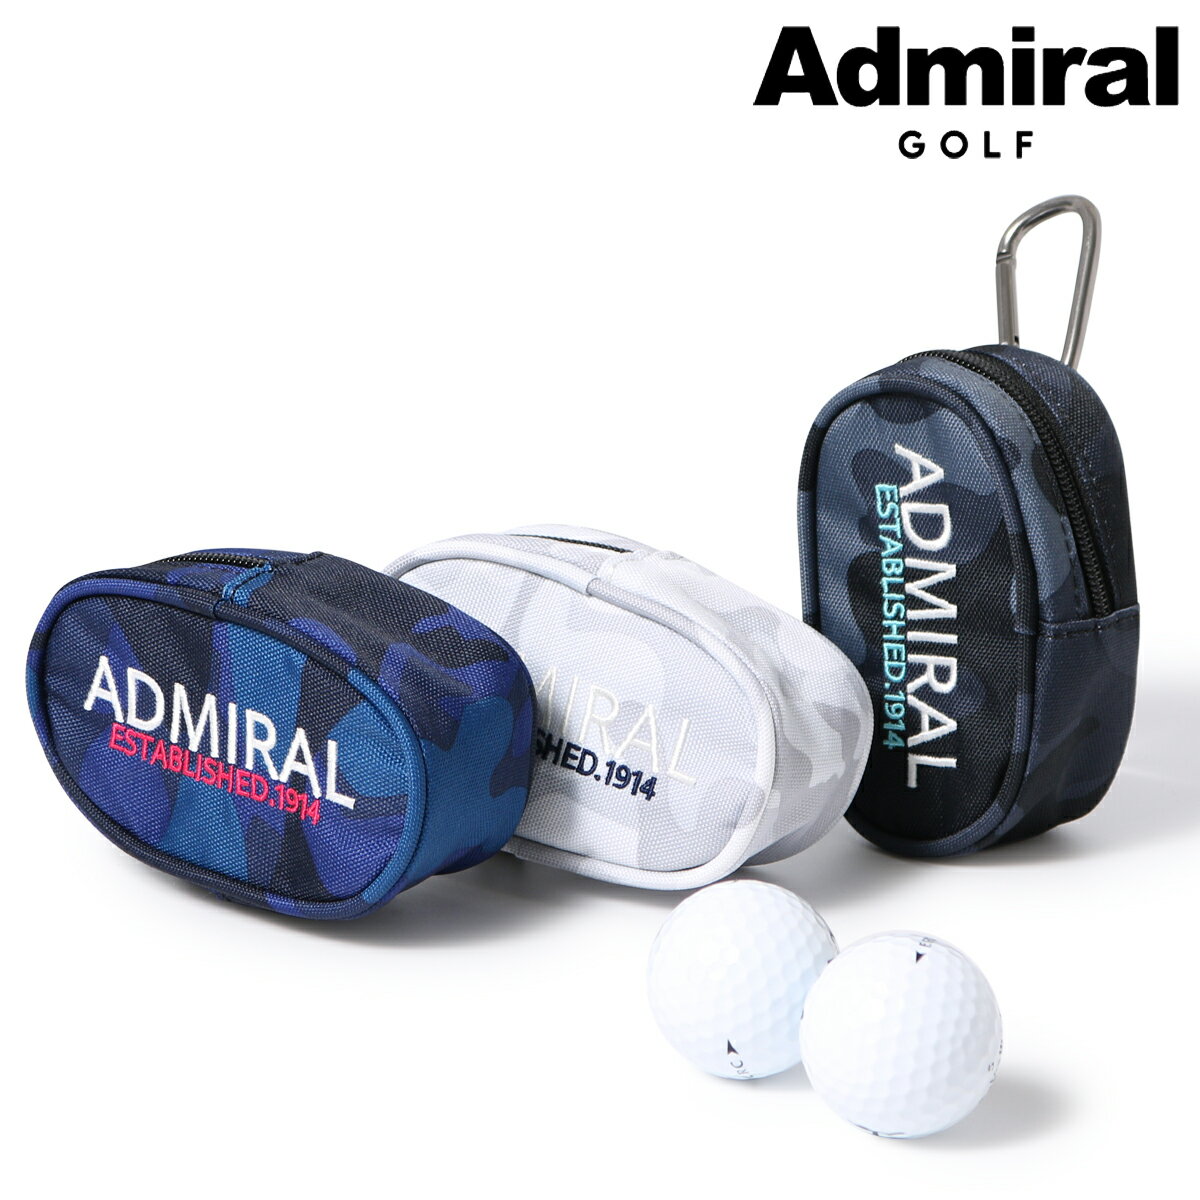 アドミラル ゴルフ ポーチ ボールポーチ ボールケース ボールホルダー ラウンドポーチ カートポーチ ゴルフポーチ メンズ ADMG2AE1 Admiral | カラビナ付き